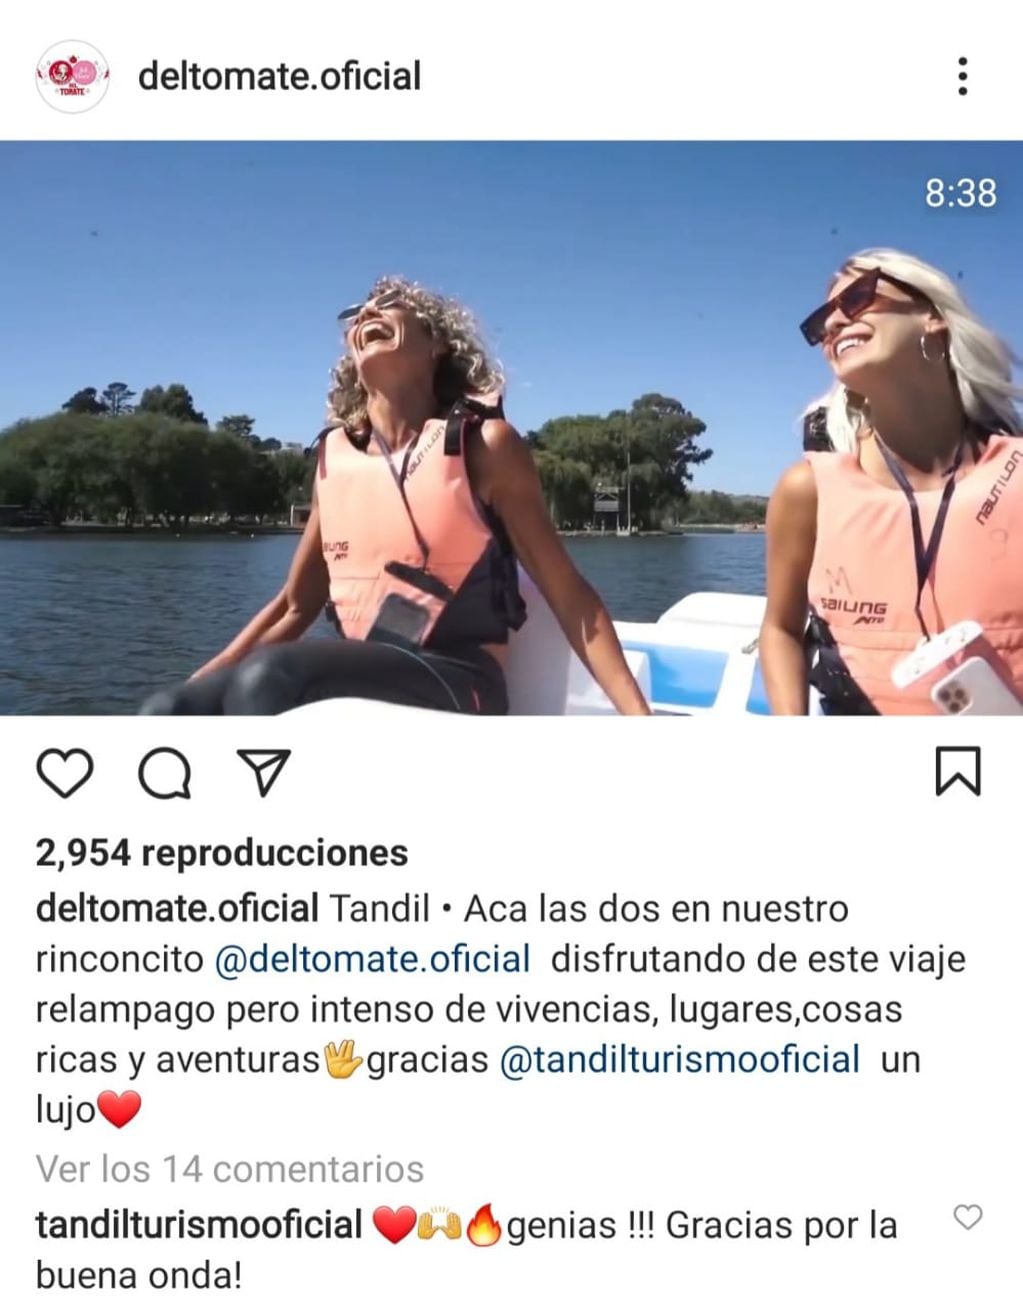 En el instagram deltomate.oficial, Maru Botana y Julieta Puente muestran sus experiencias en diferentes lugares.